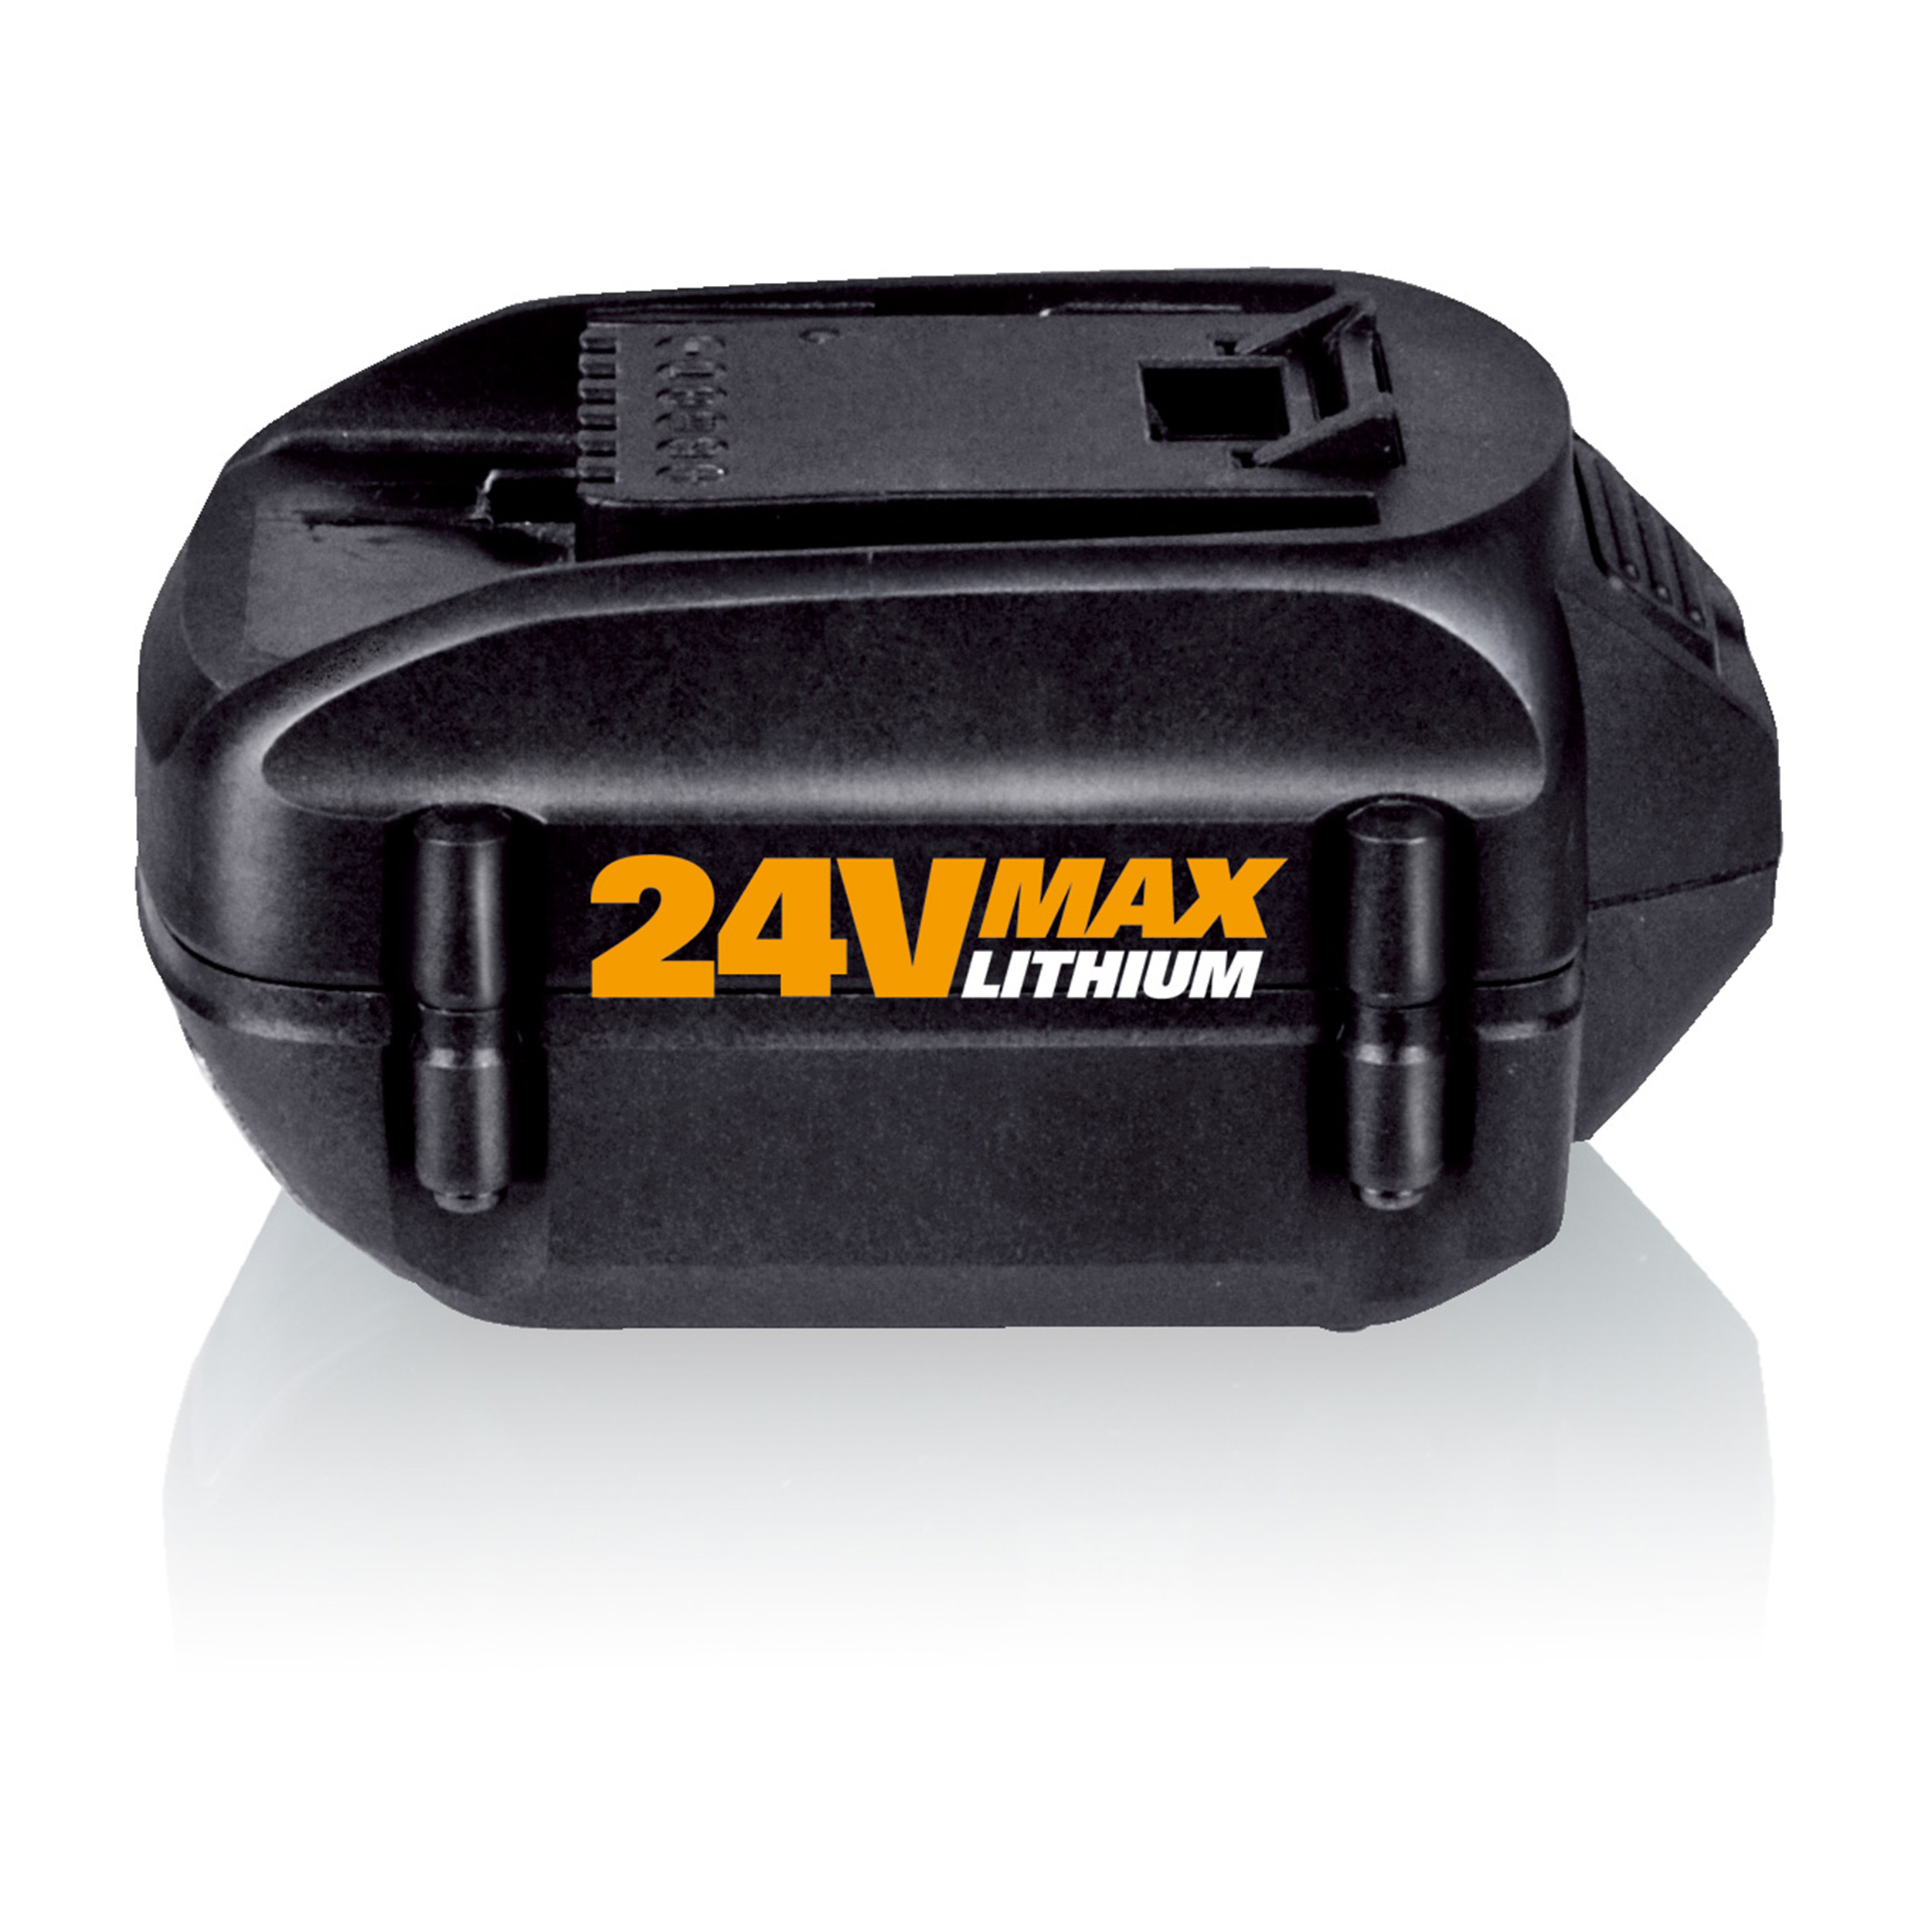 24v Max 2.0 Ah Lithium Battery For Model Wg167